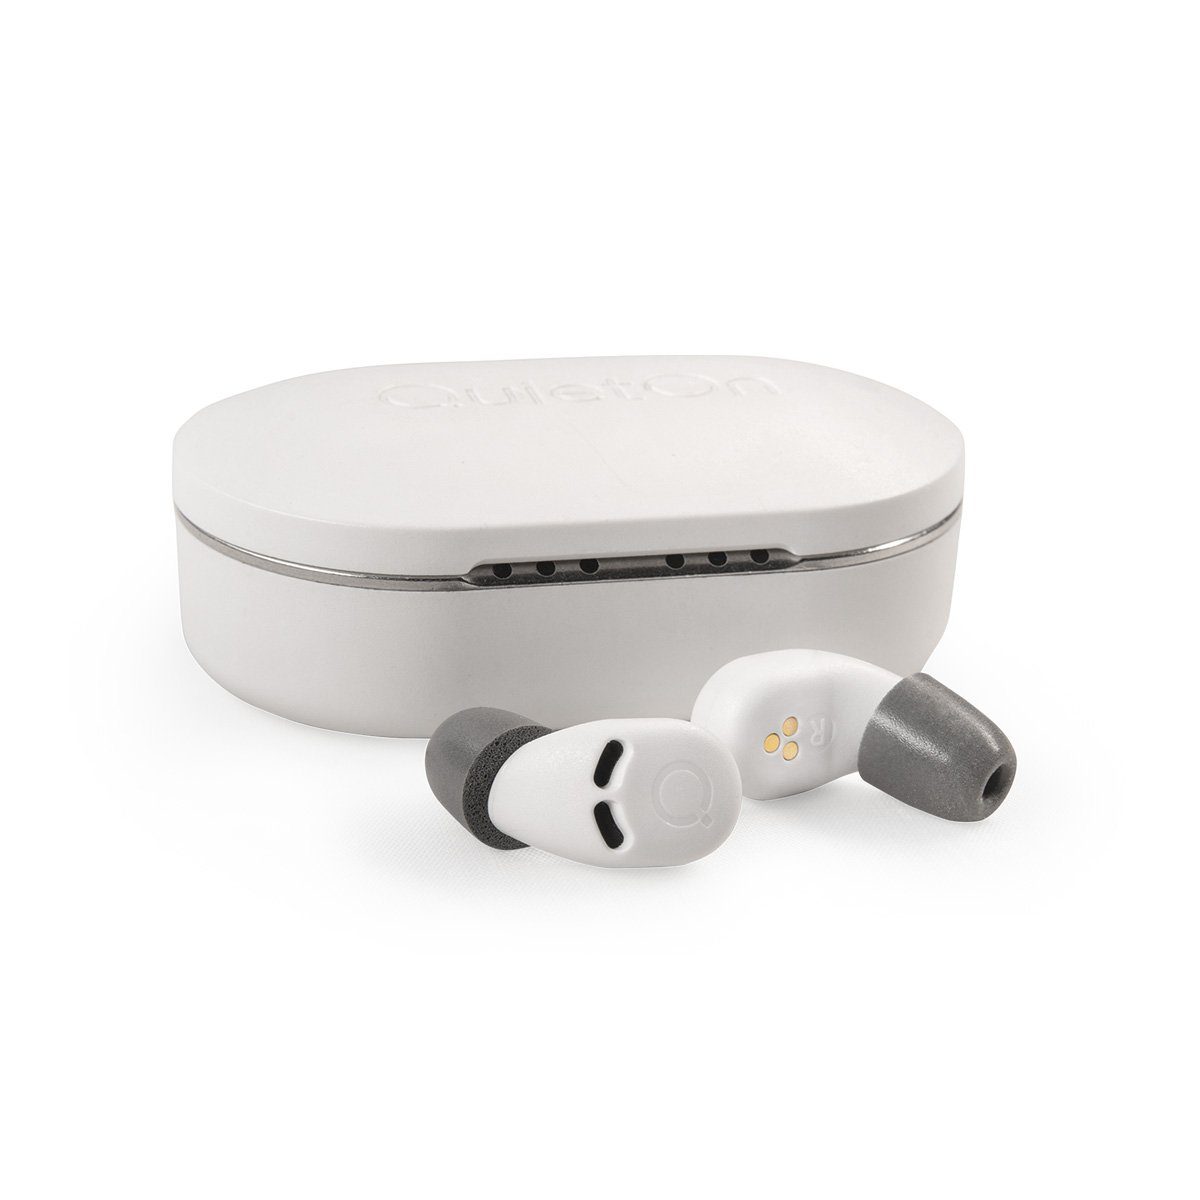 QuietOn QuietOn - Geräuschunterdrückung Ohrstöpsel für einen ruhigen Schlaf Schlaf-Kopfhörer (Aktive Geräuschunterdrückung zur Unterdrückung von Schnarchen und anderen Umgebungsgeräusche)